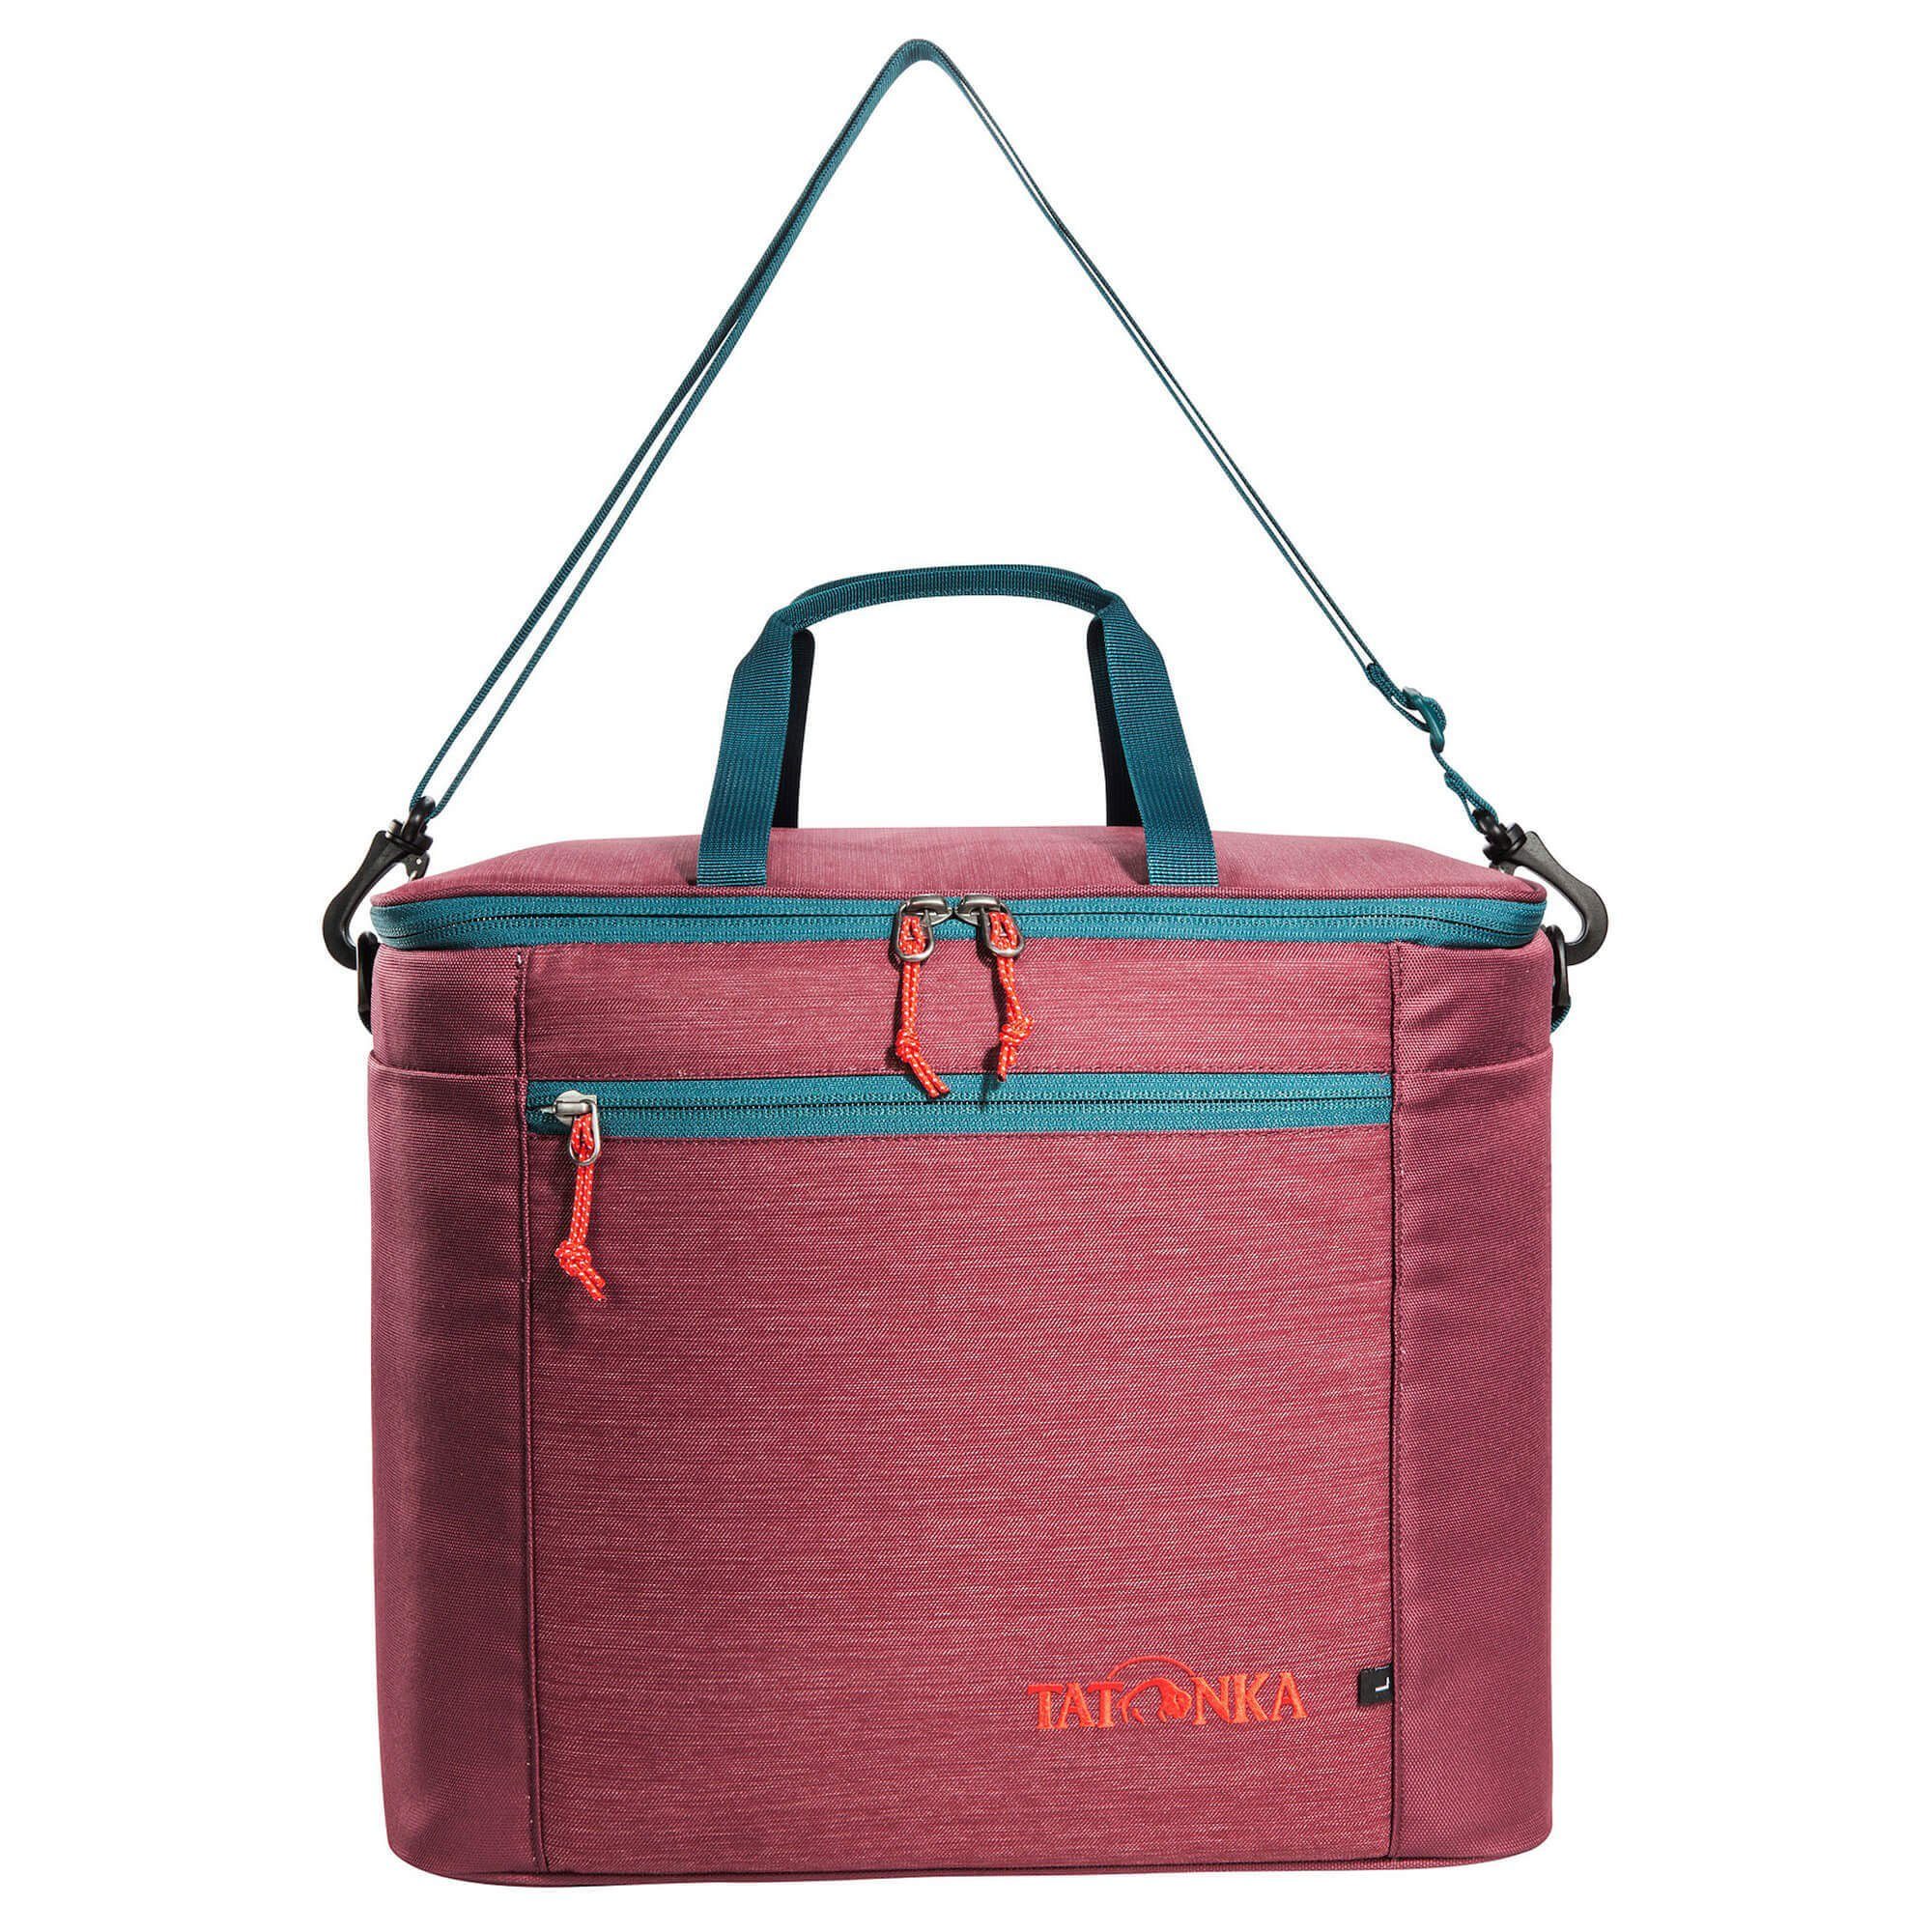 TATONKA® Einkaufsbeutel Cooler Bag L - Kühltasche 37 cm, 25 l navy | Einkaufsshopper